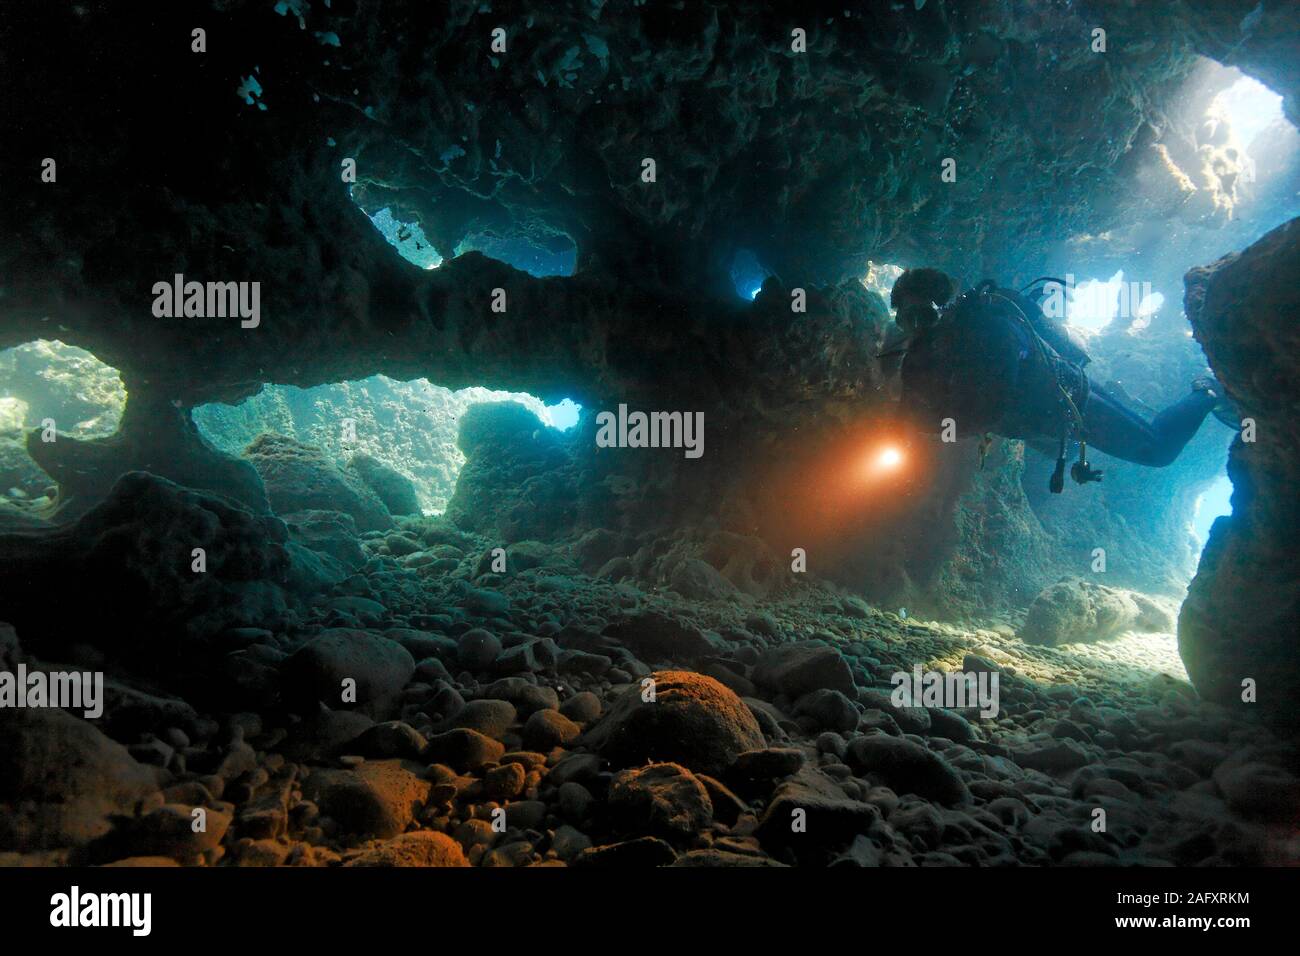 Taucher dringt in eine Unterwasserhöhle ein, Zakynthos, Griechenland | Scuba diver entering a underwater cave, Zakynthos island, Greece Stock Photo